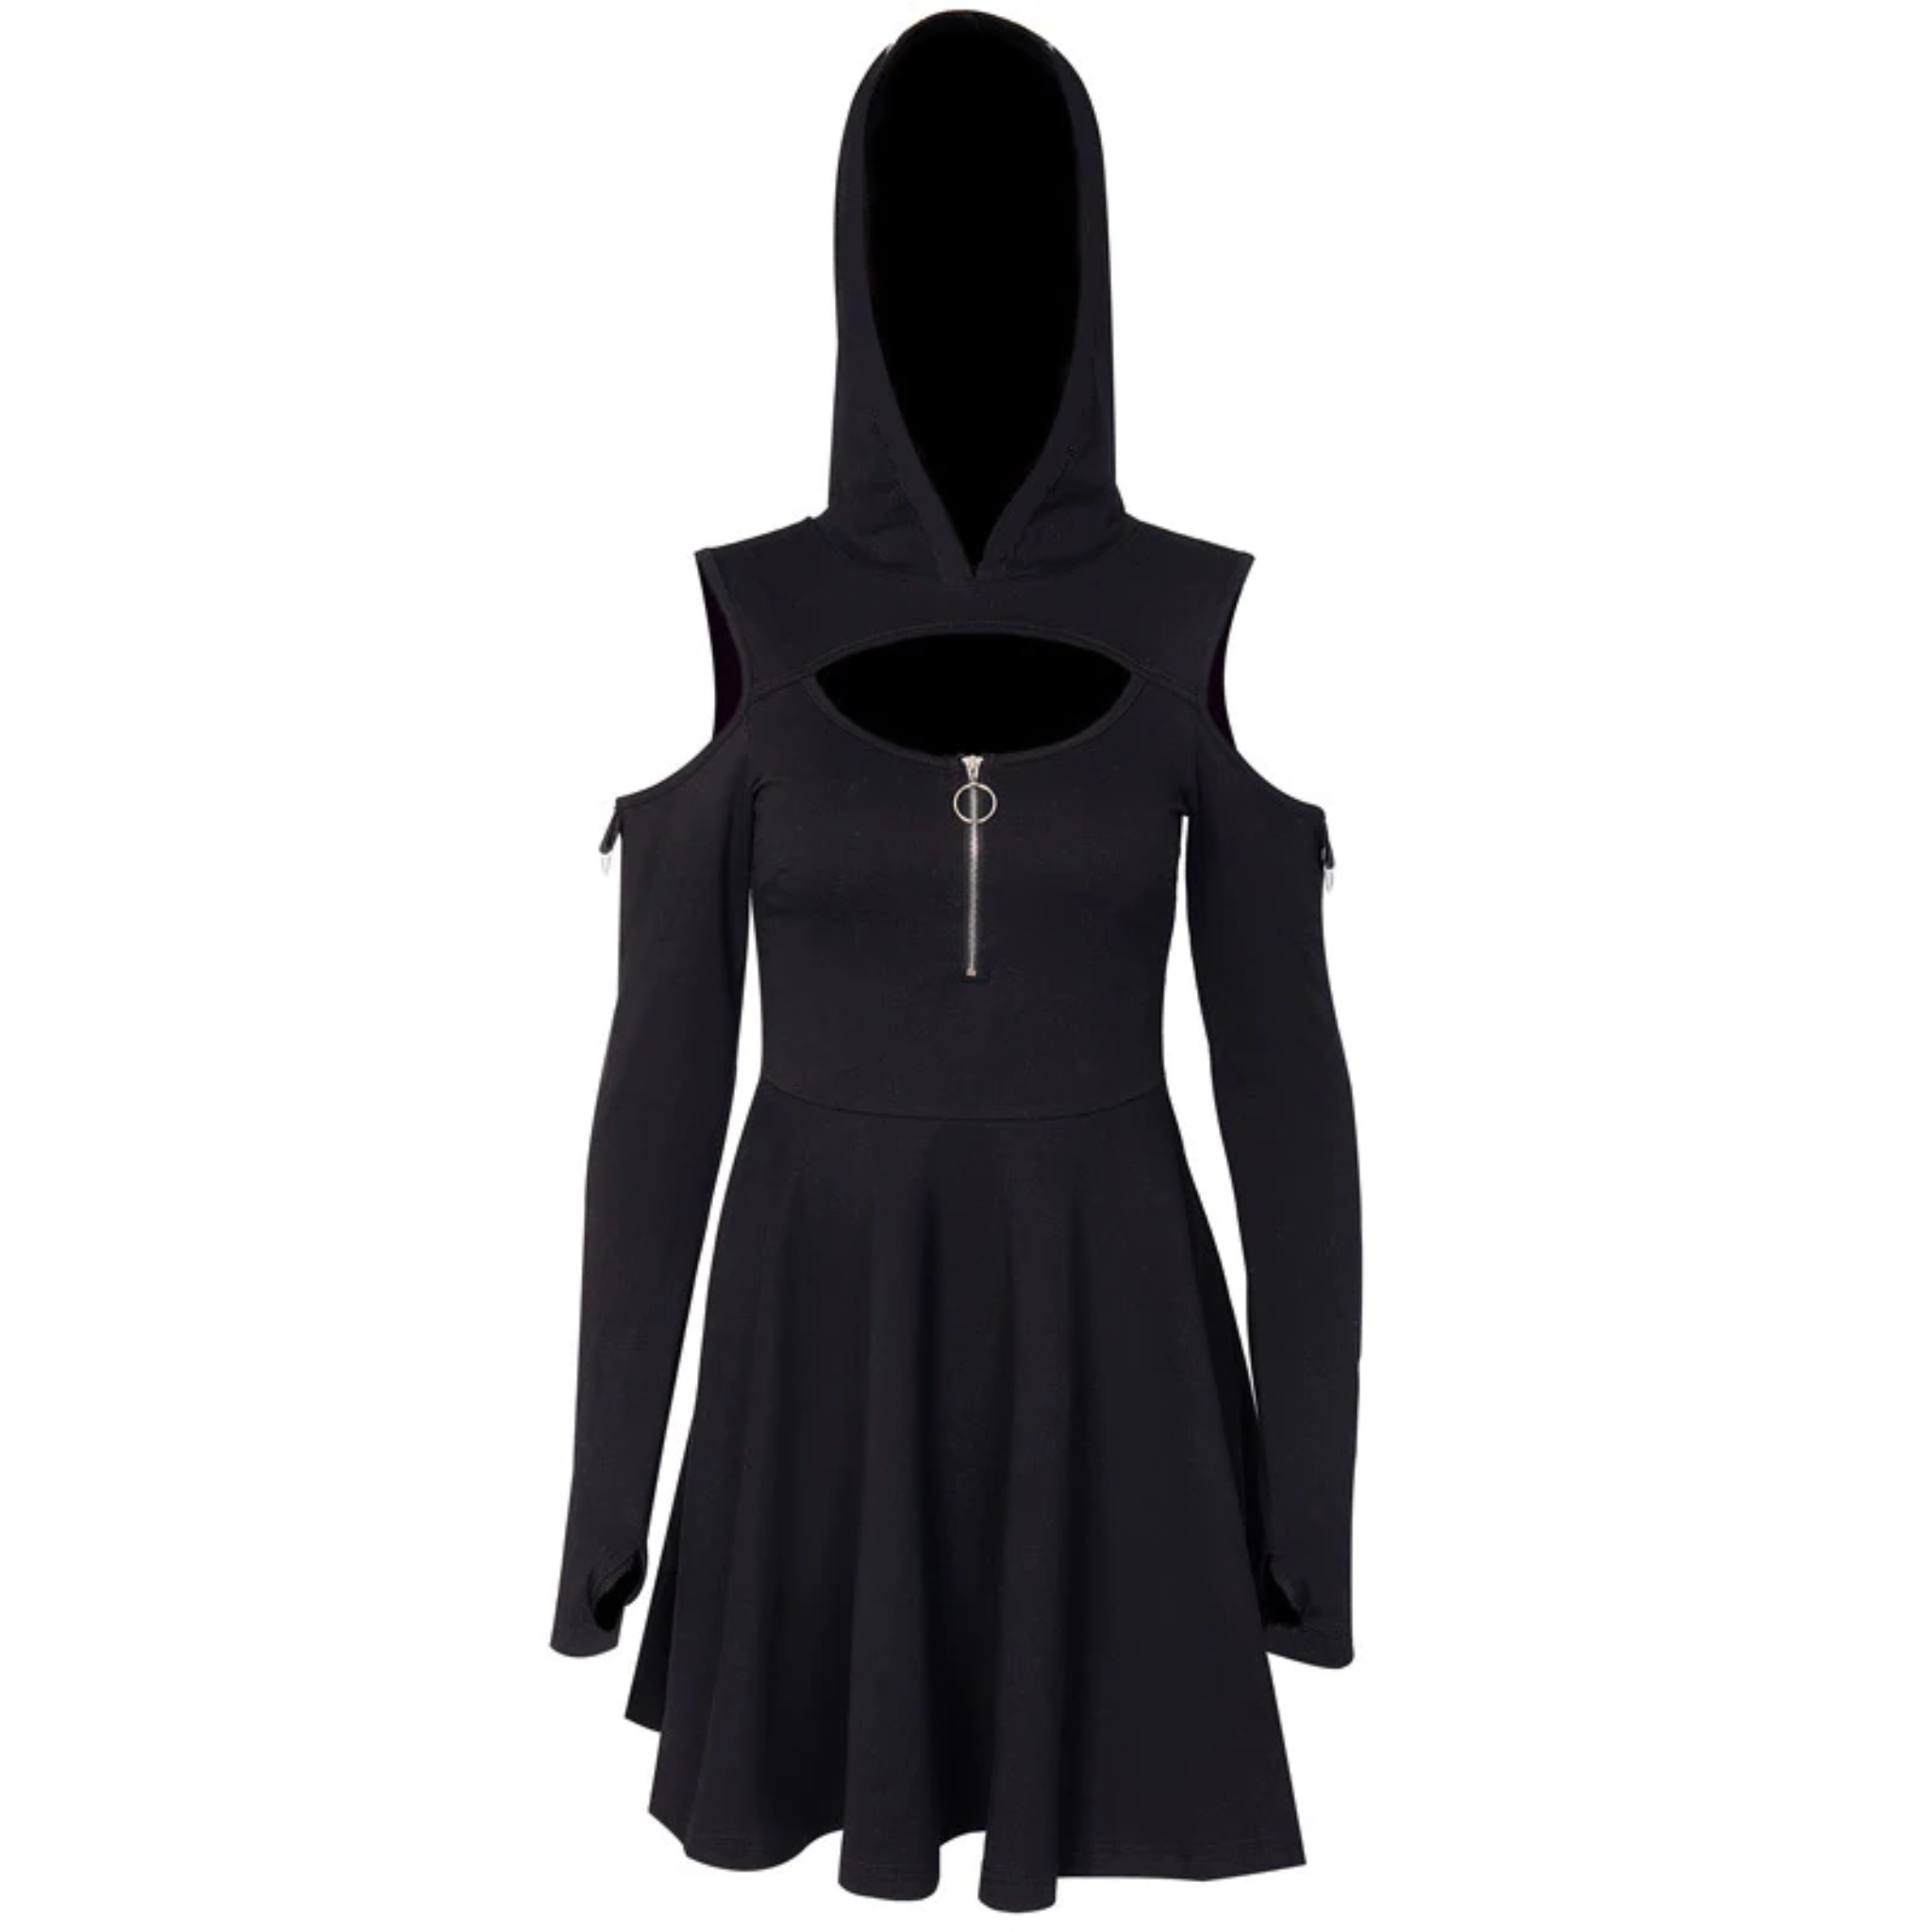 Black Sweatshirt Dress, Hoodie Sweatshirt, Hoodie Dress, Cyberpunk Dress,  Plus Size Hoodie, Gothic Dress, Cyberpunk Clothing, Sport Dress -   Israel